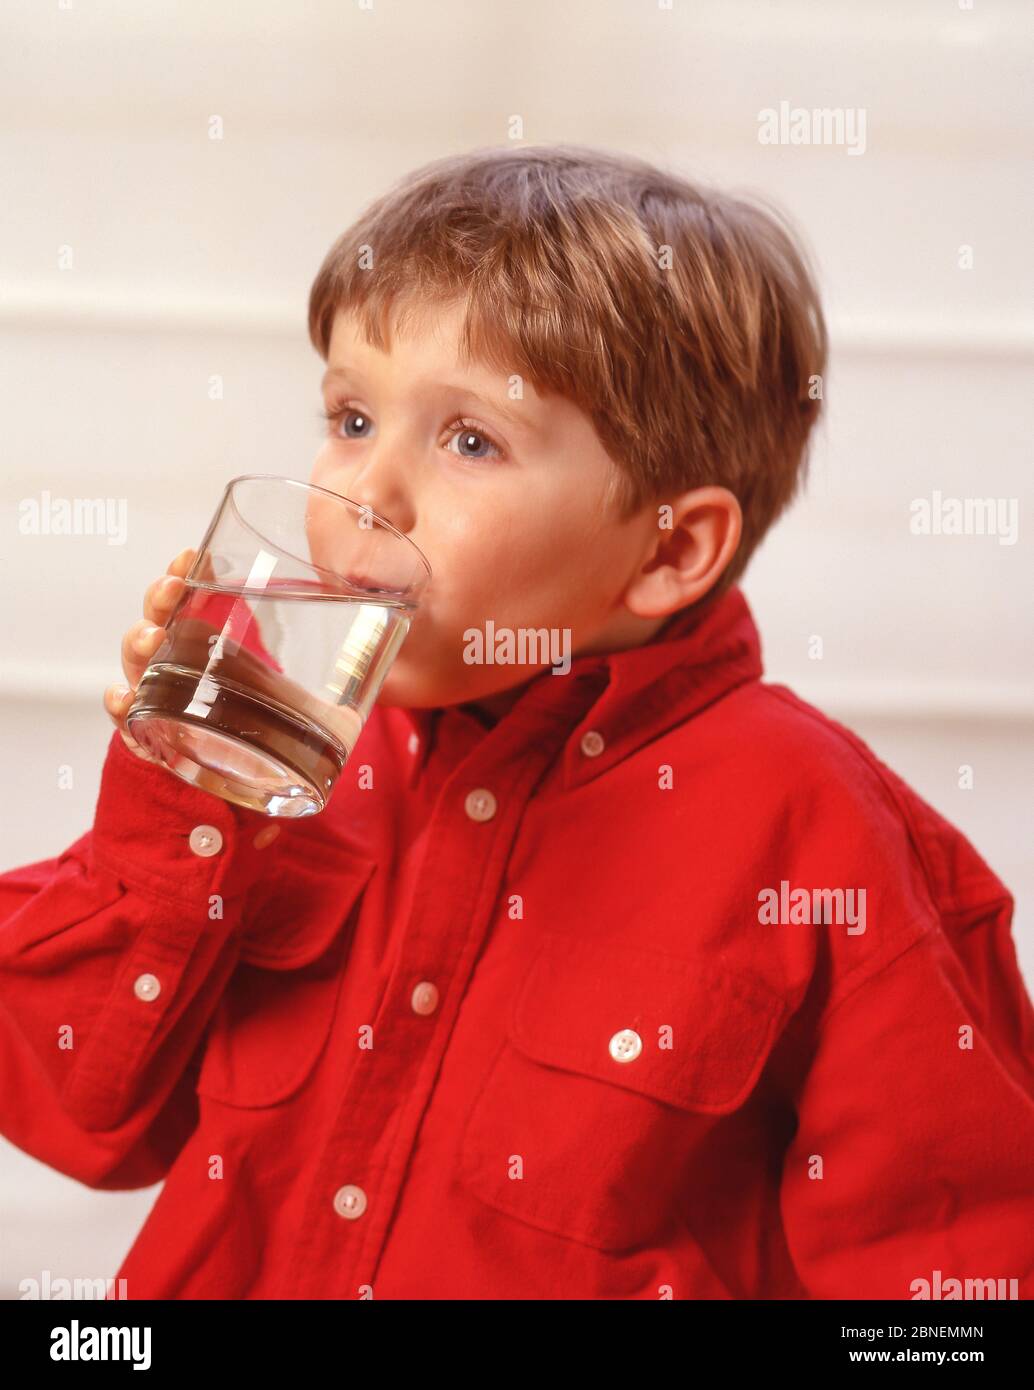 Jeune garçon buvant un verre d'eau, Winkfield, Berkshire, Angleterre, Royaume-Uni Banque D'Images